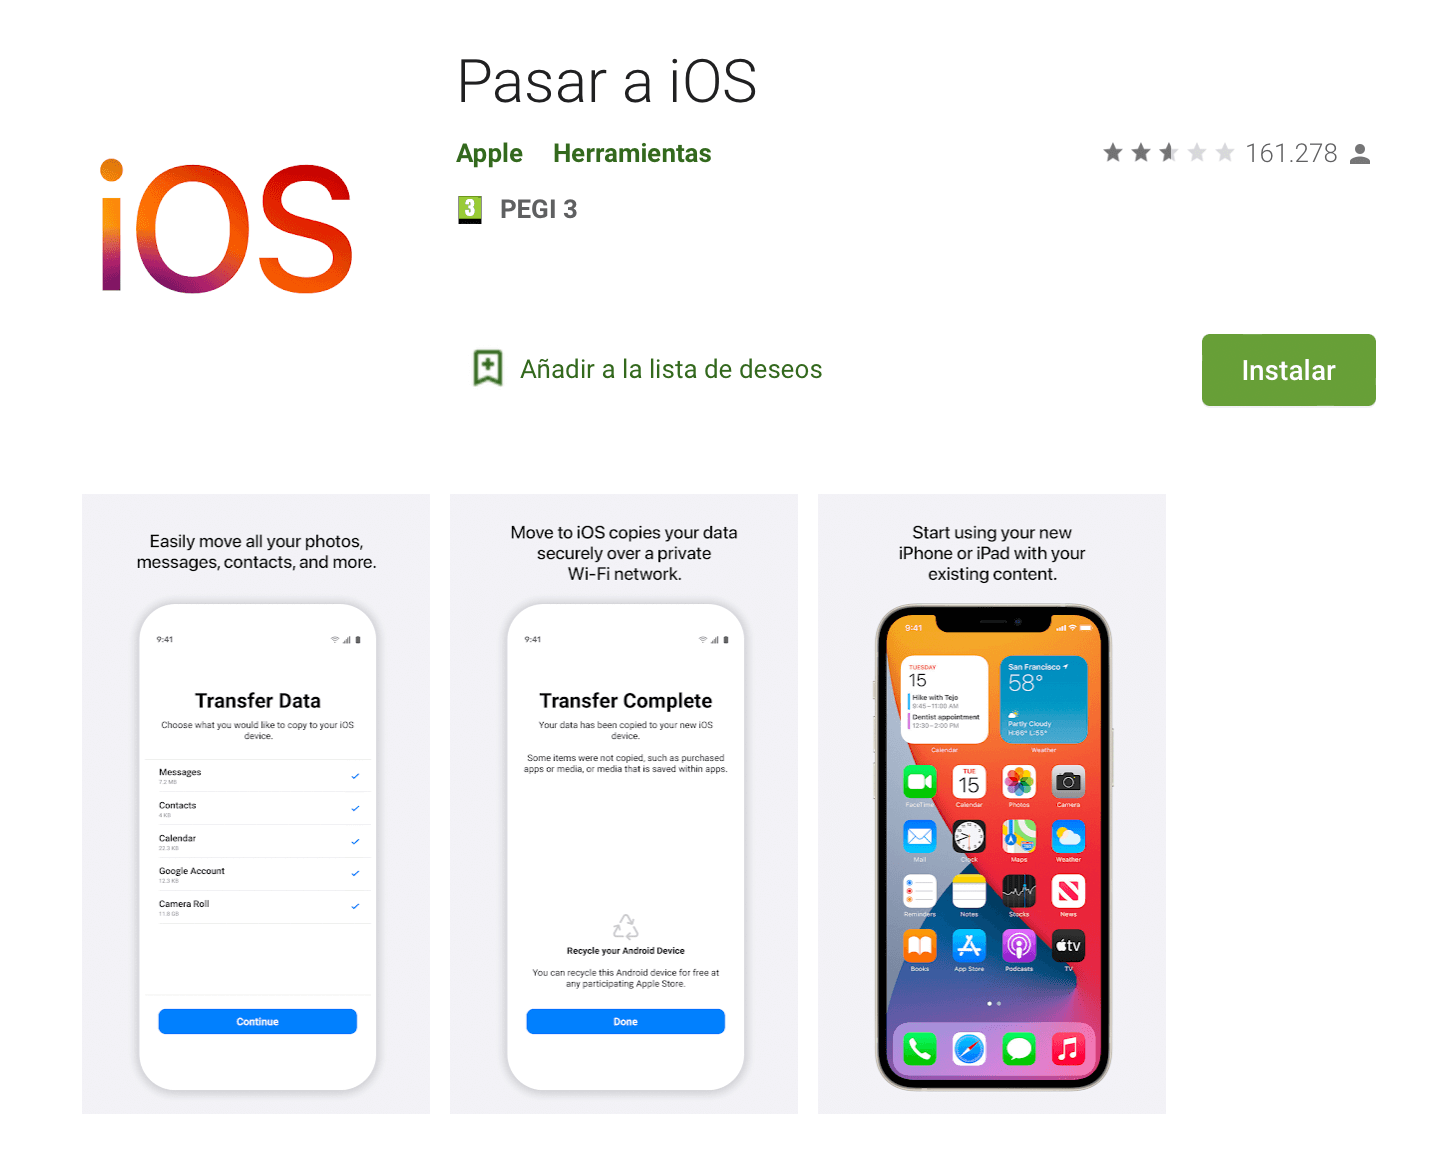 Pasar a iOS en Google Play